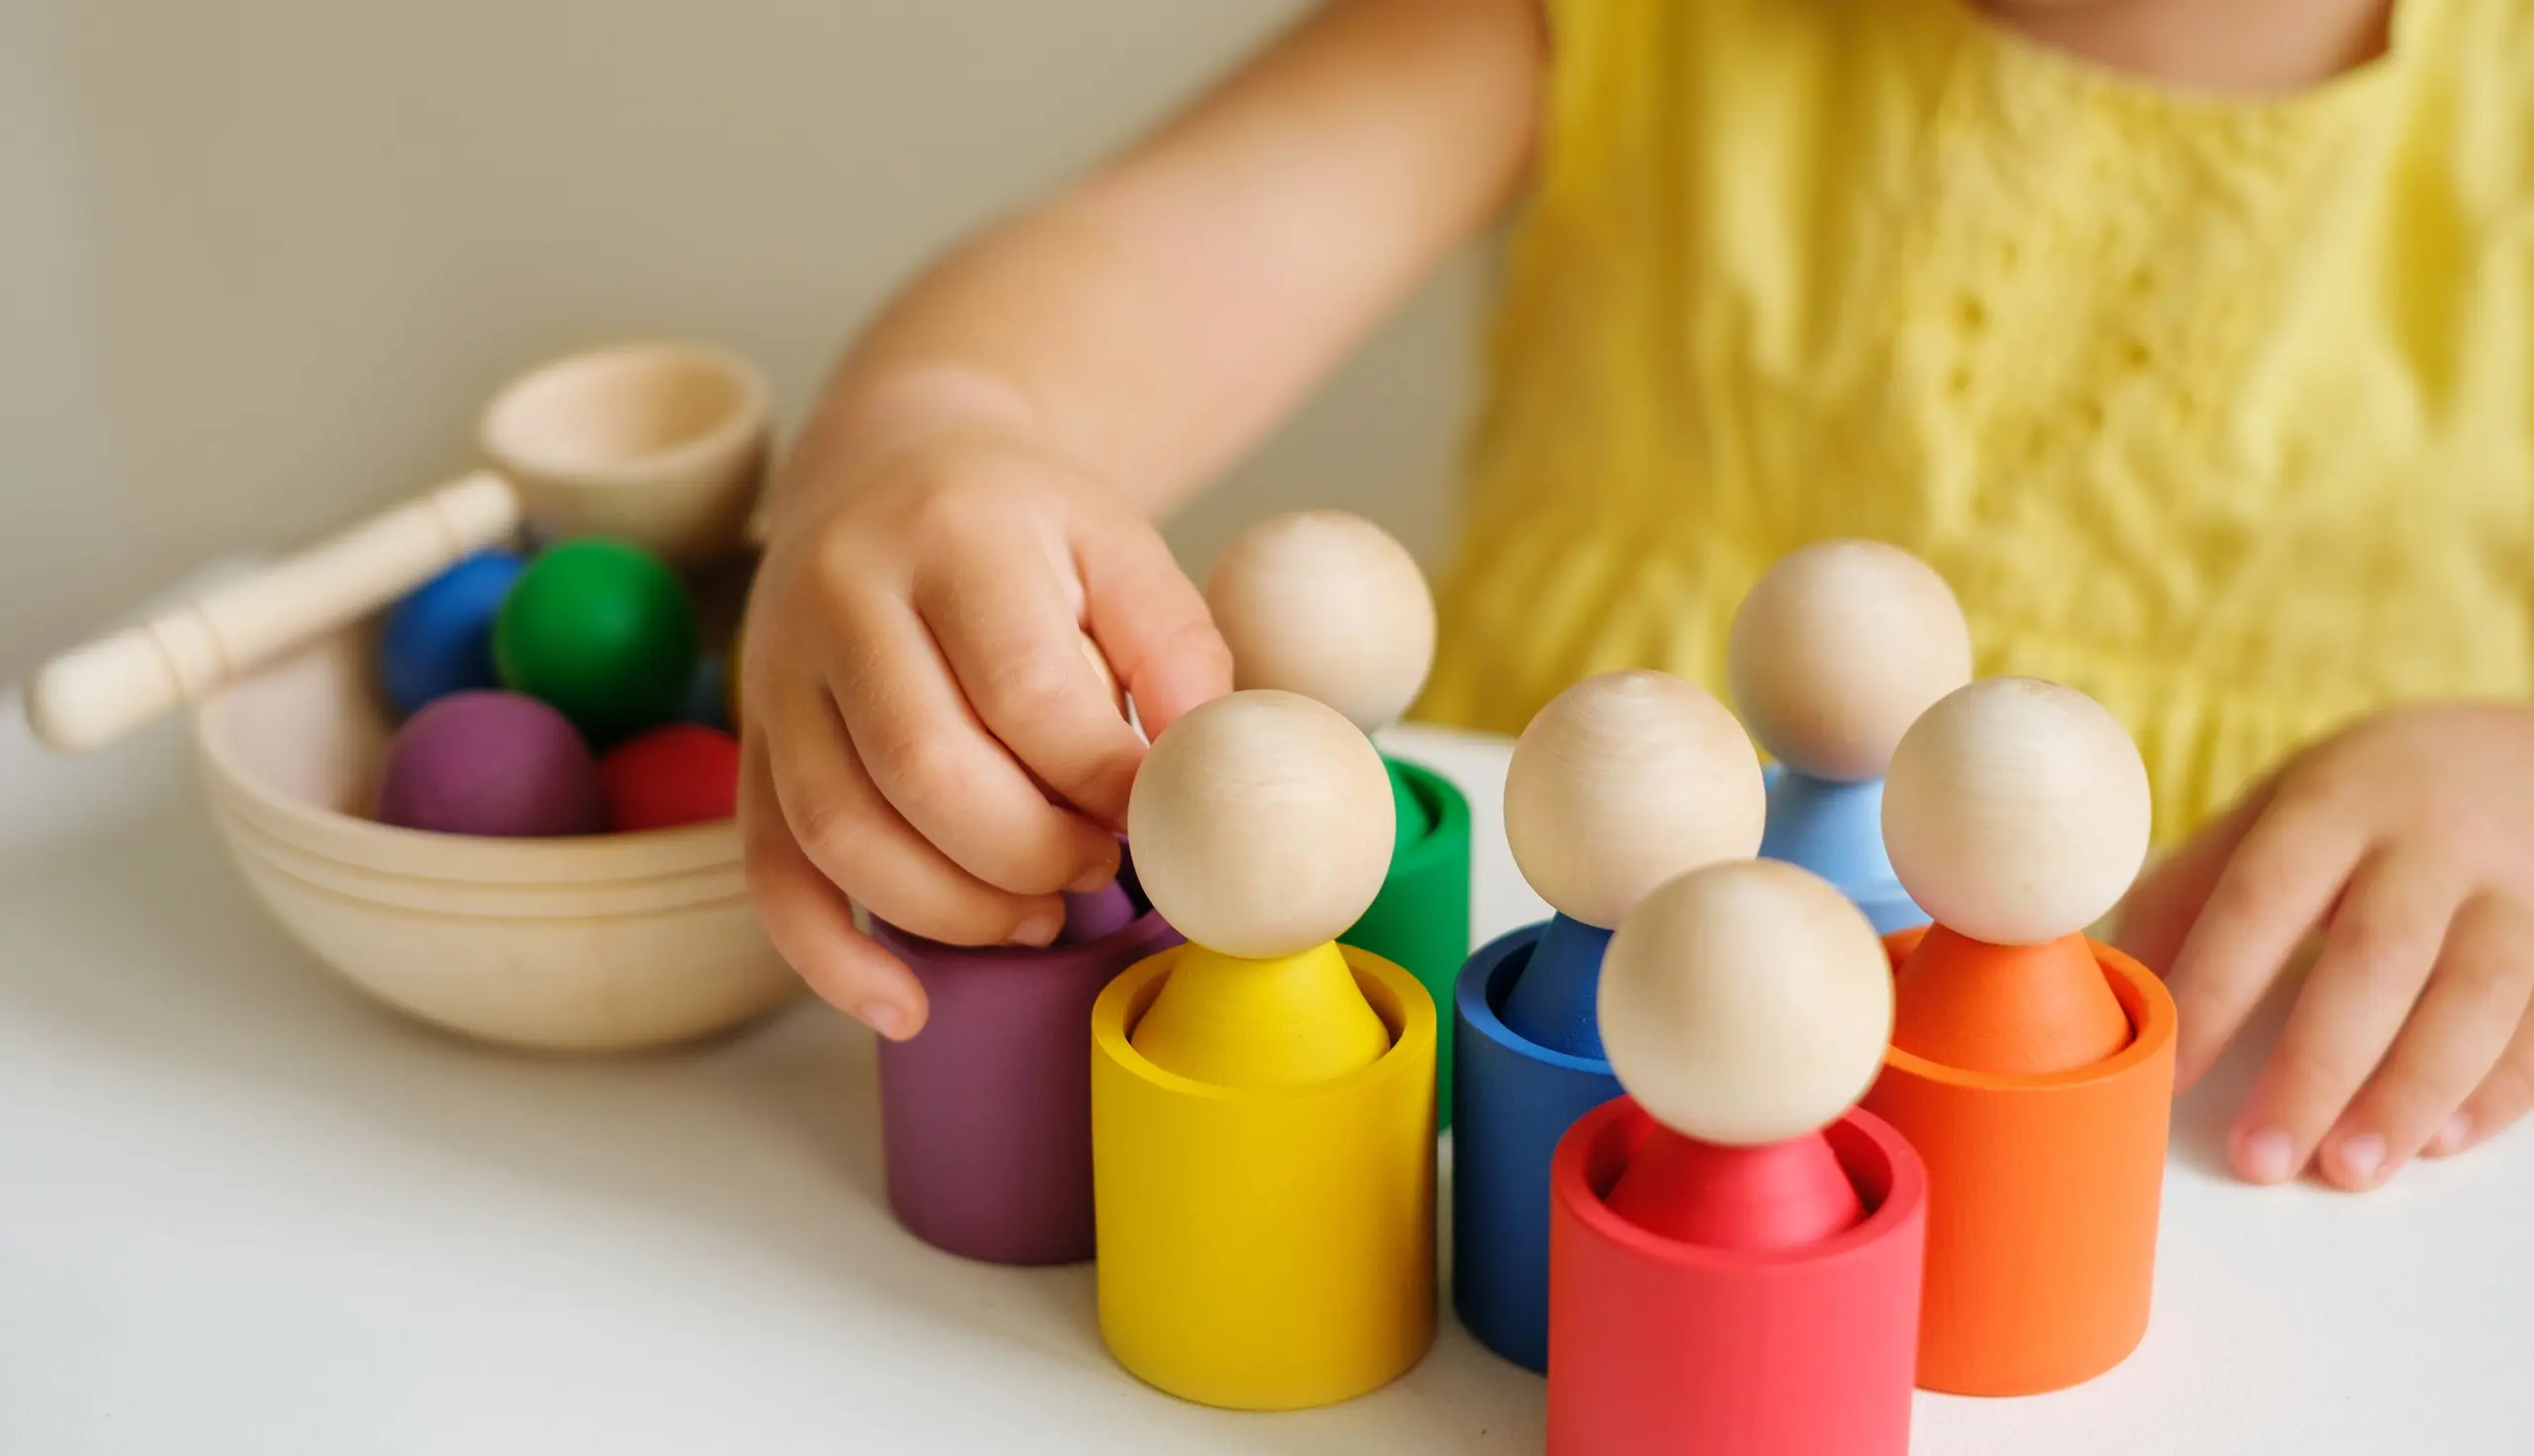 Kind lernt nach Montessori-Pädagogik, die besagt: Hilf mir, es selbst zu tun.